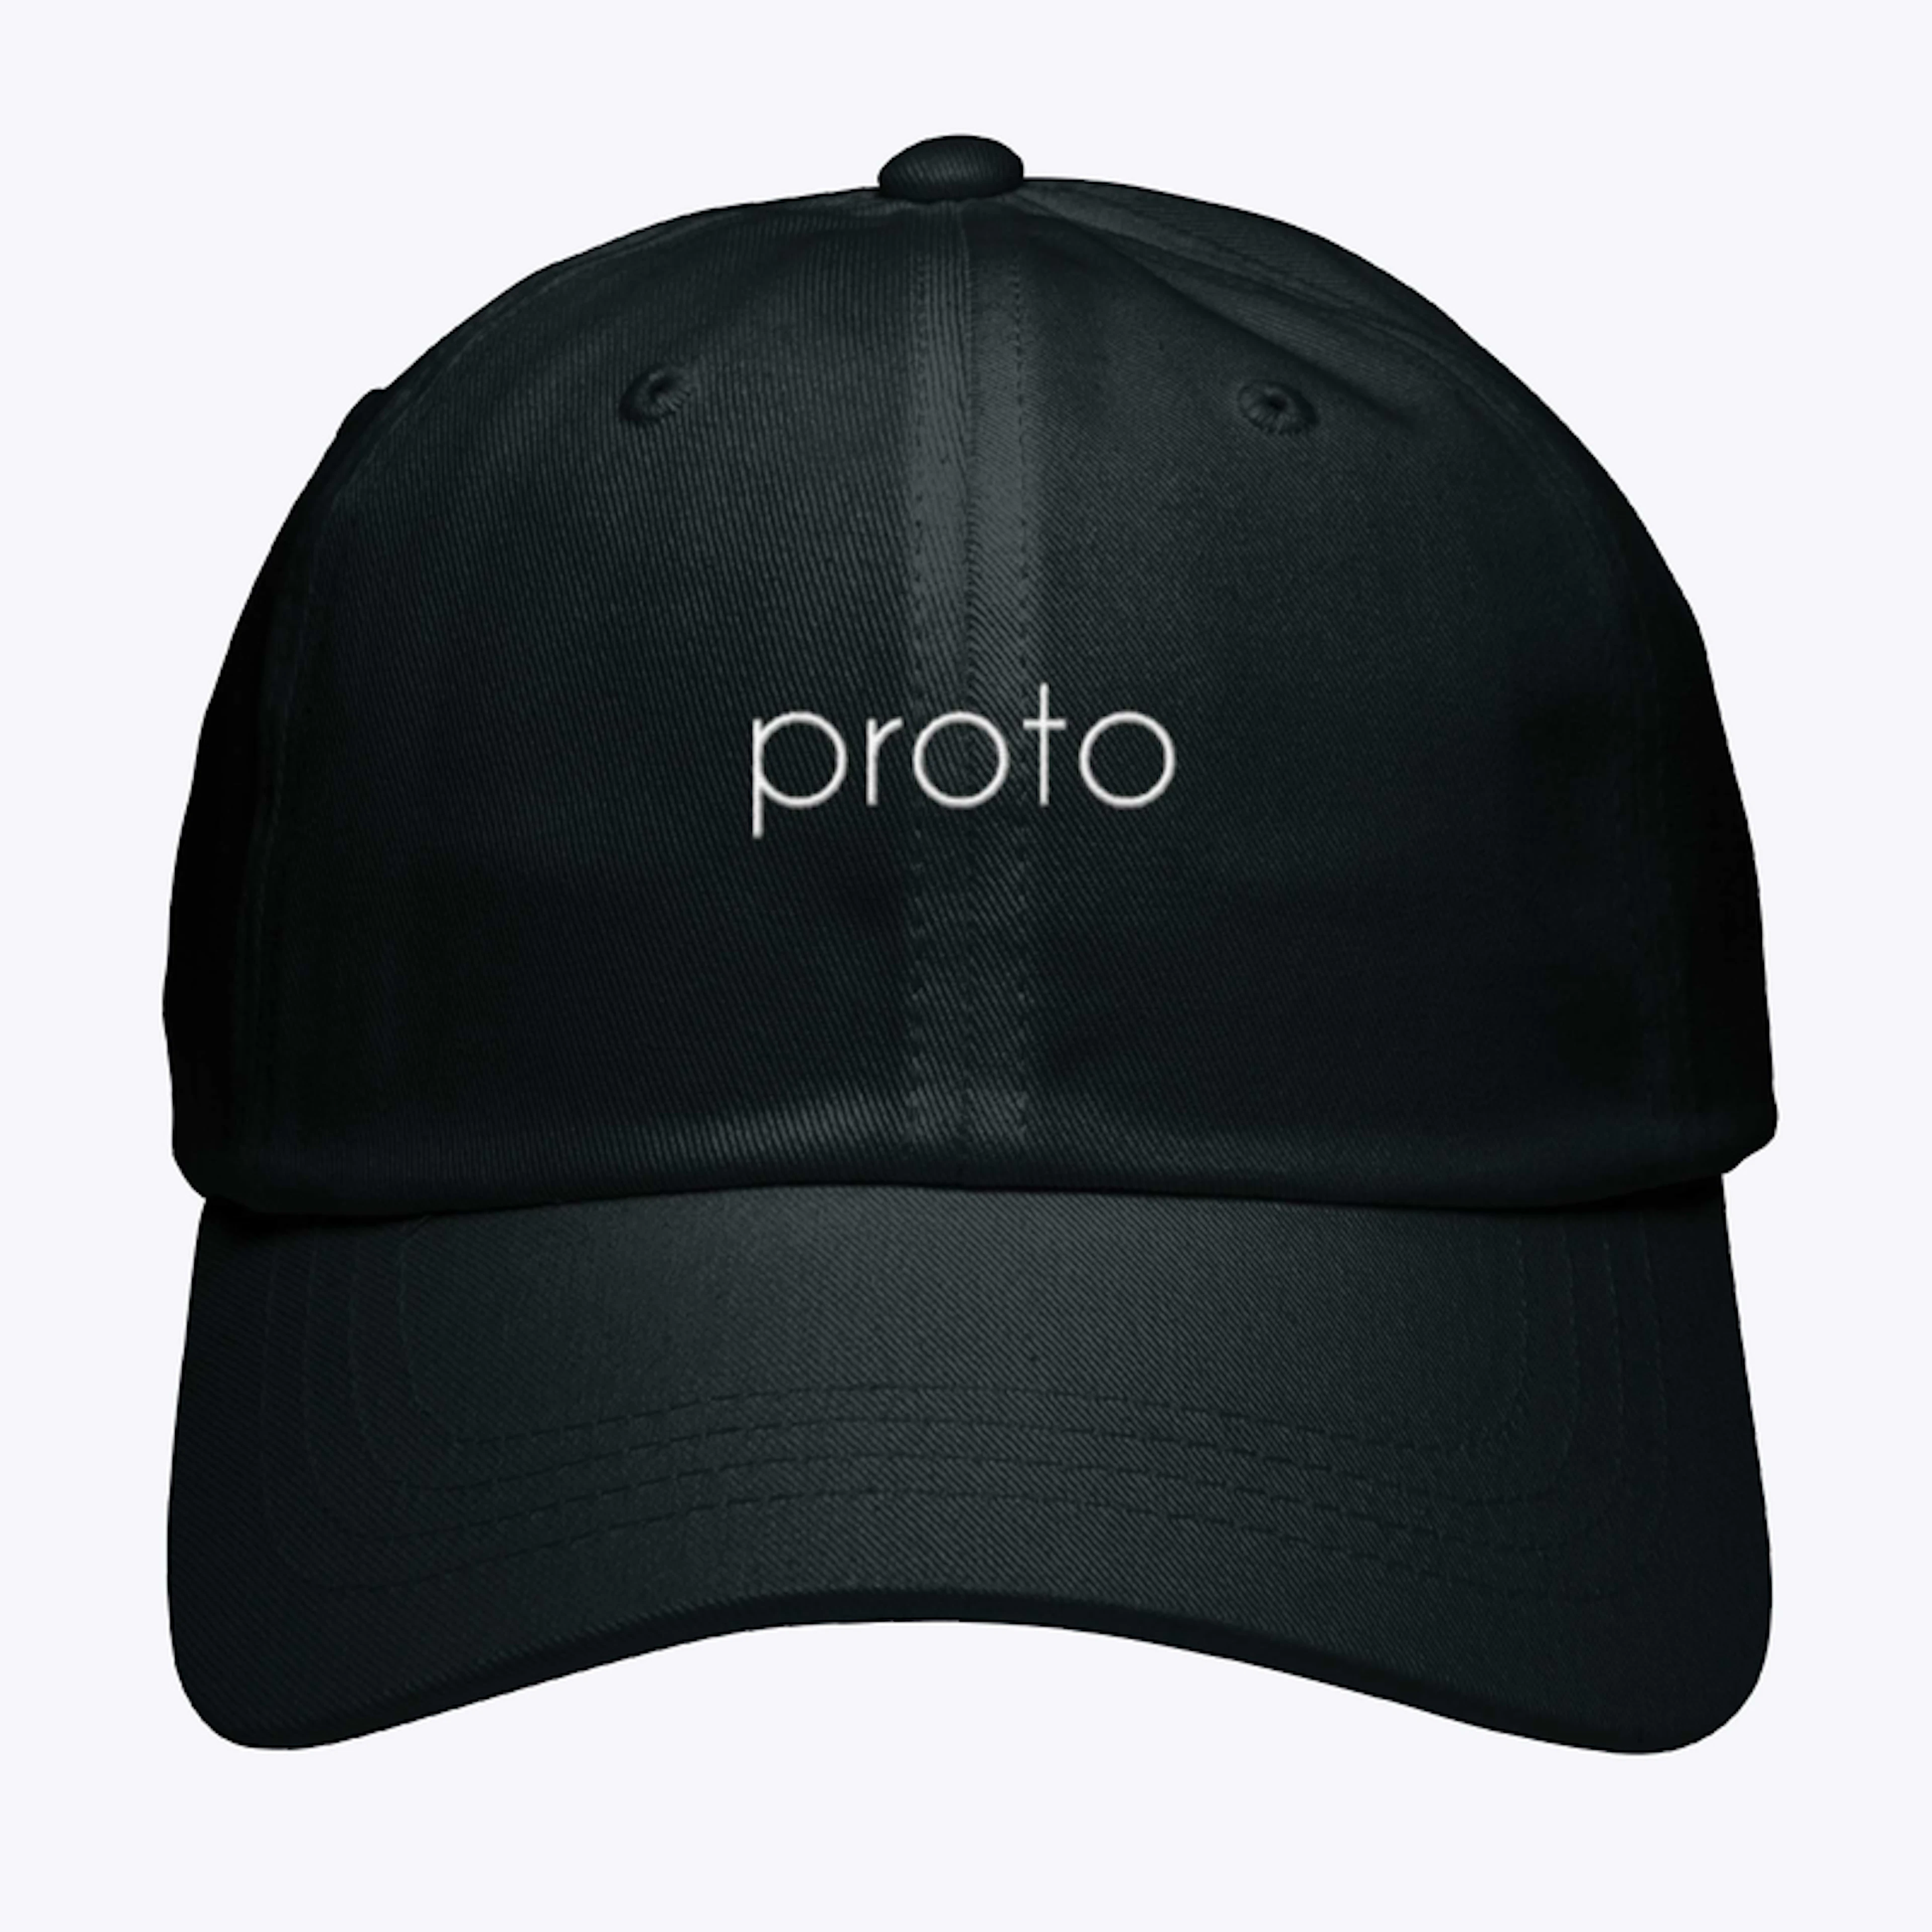 Proto Hat